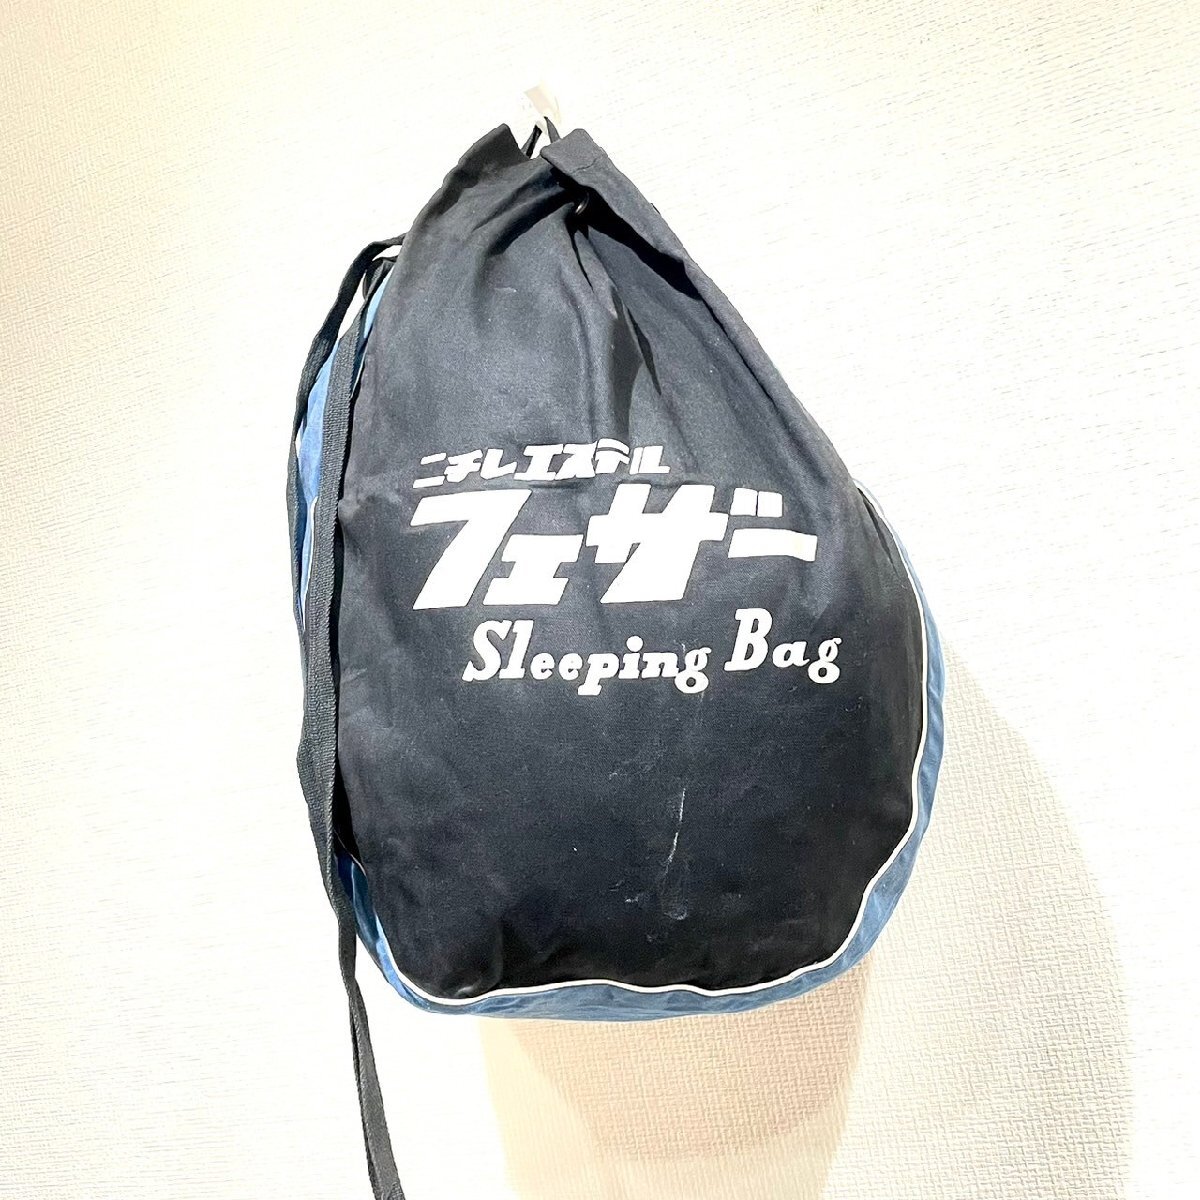 (^w^)b ニチレエステル フェザー Sleeping Bag 寝袋用 シェラフ バッグ 鞄 カバン BAG アウトドア 袋 のみ ブルー × ブラック B0490AE_画像1